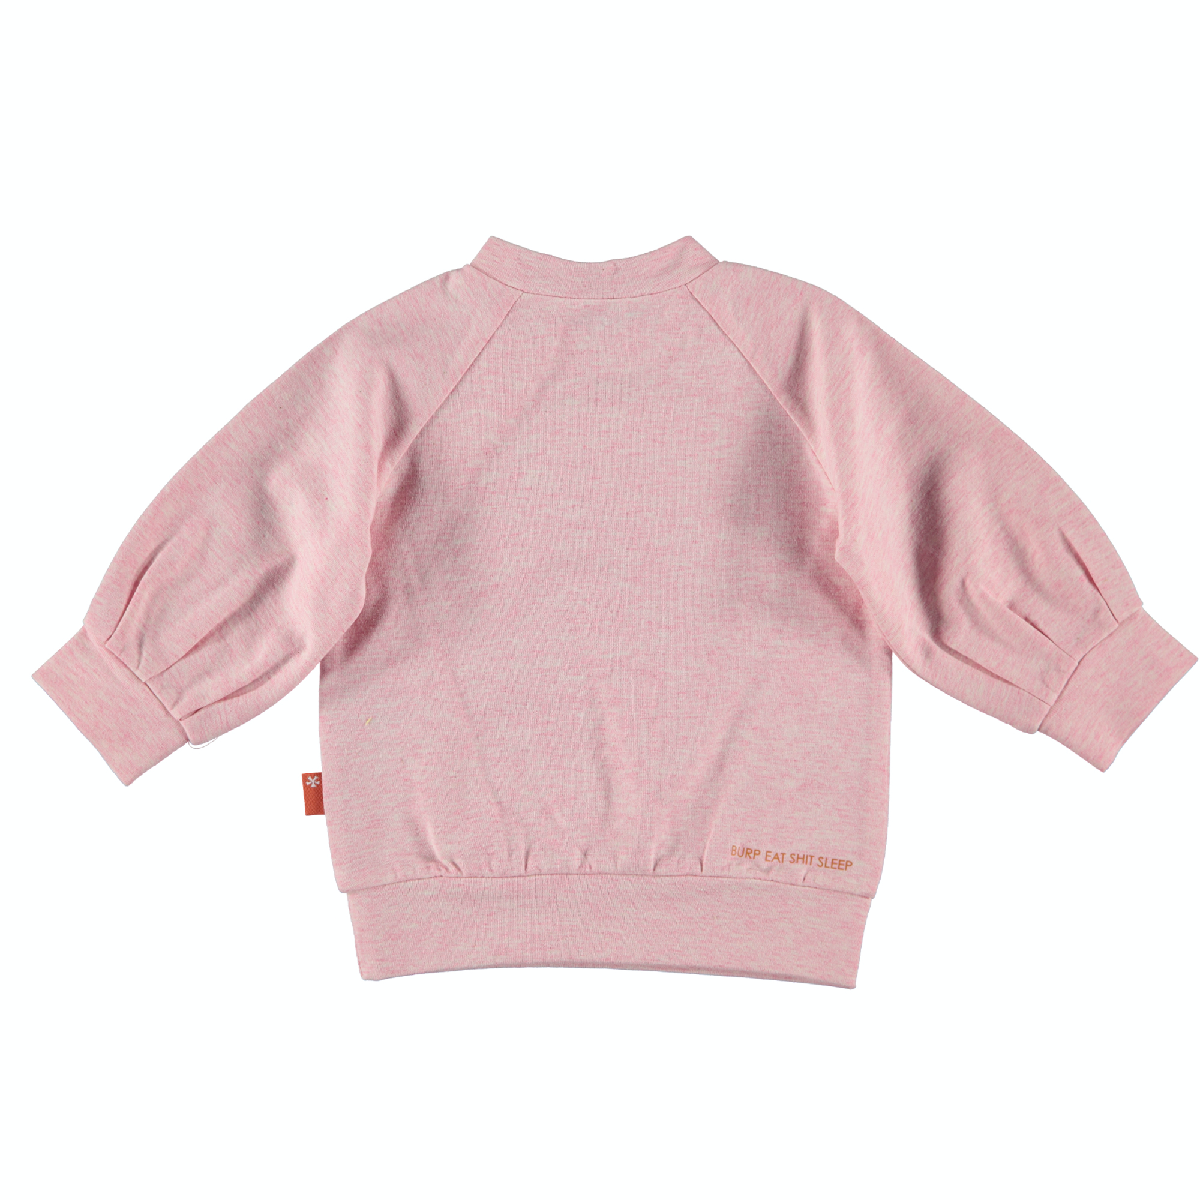 Meisjes Sweater Lovely Days Ruffles van B.E.S.S. in de kleur Pink in maat 80.